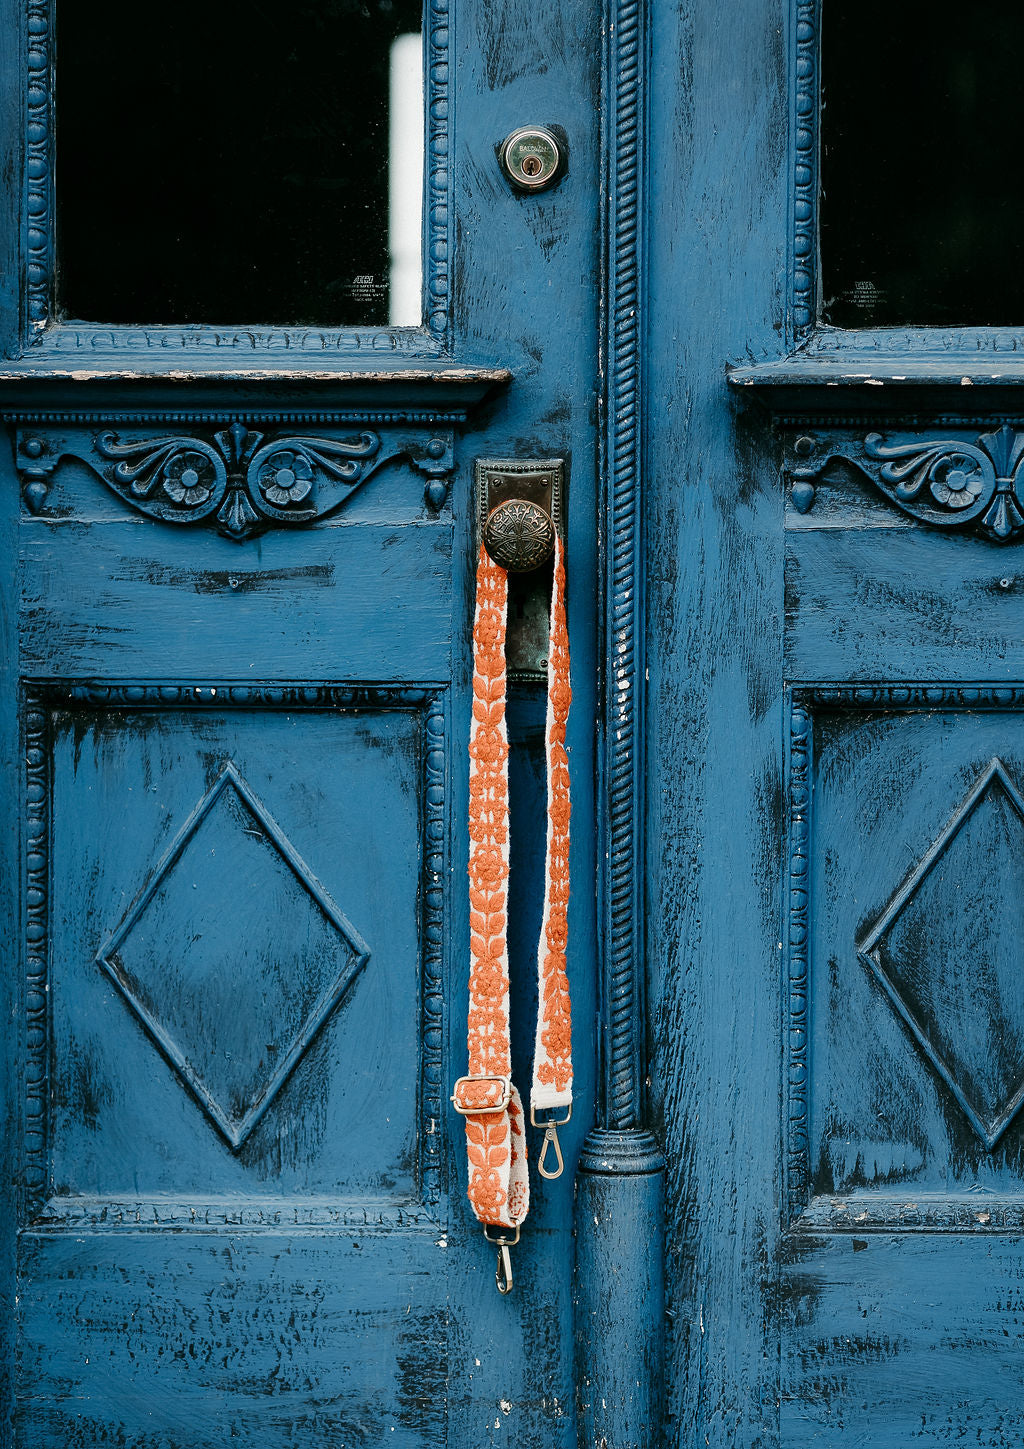 Rachel Adjustable Strap displayed hanging around the doorknob of a blue door.